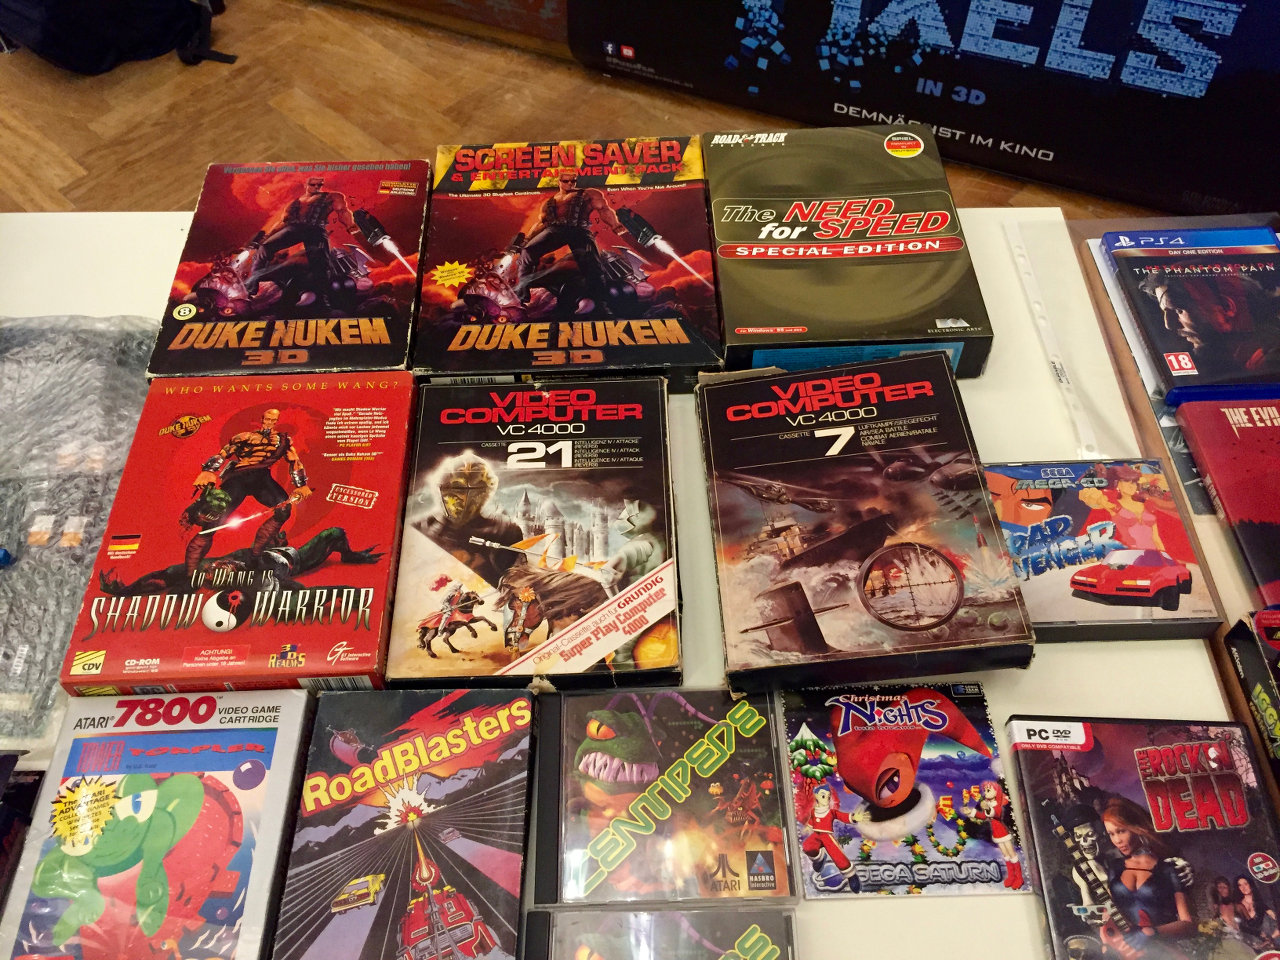 Eine irre Mischung: Duke Nukem 3D (PC), VC4000 und Atari 7800 Spiele. (Bild: André Eymann)